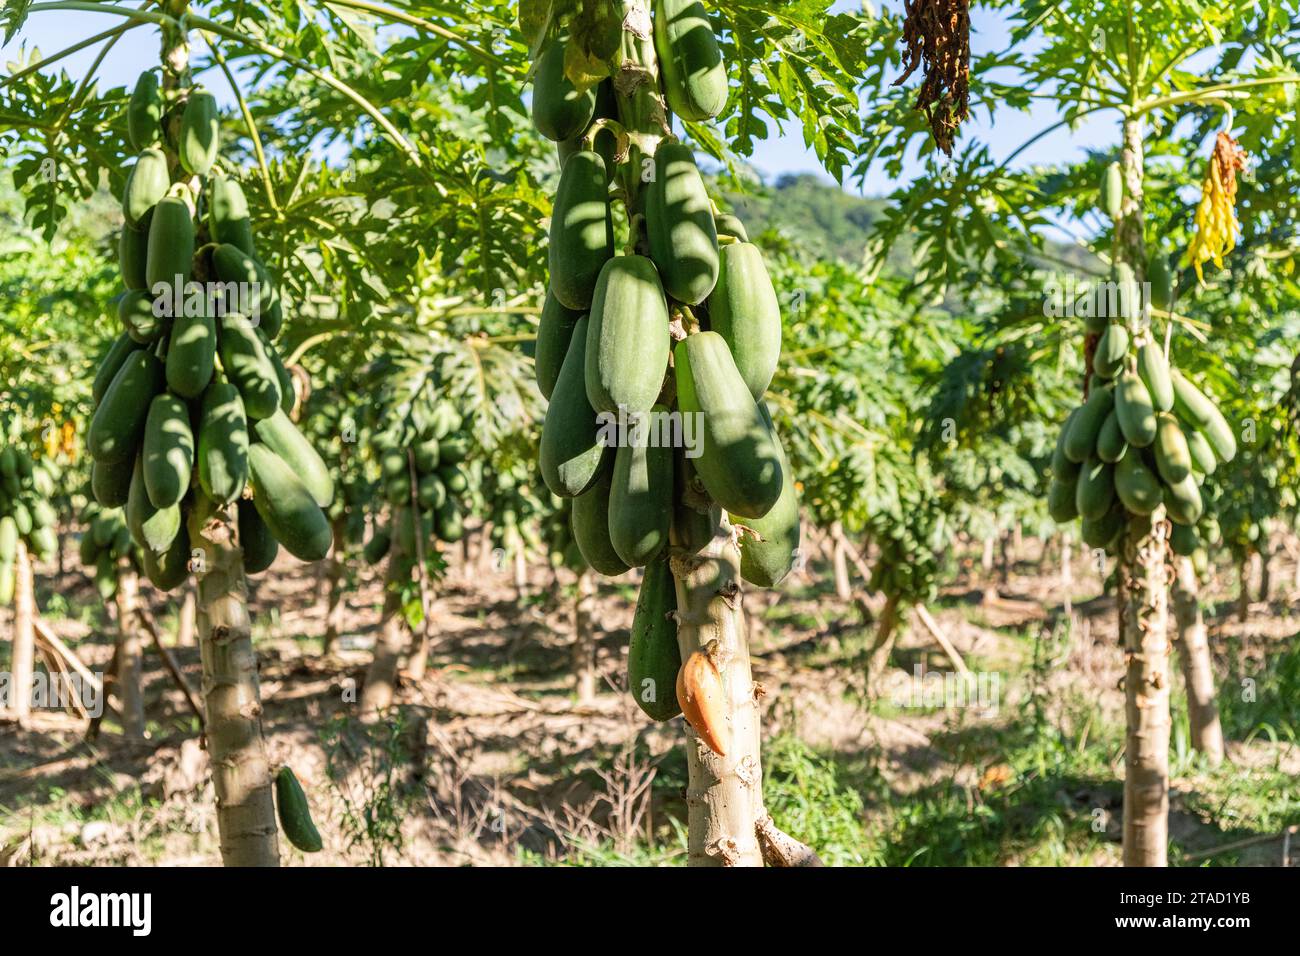 A papaya fruit tree farm in Colombia Stock Photo